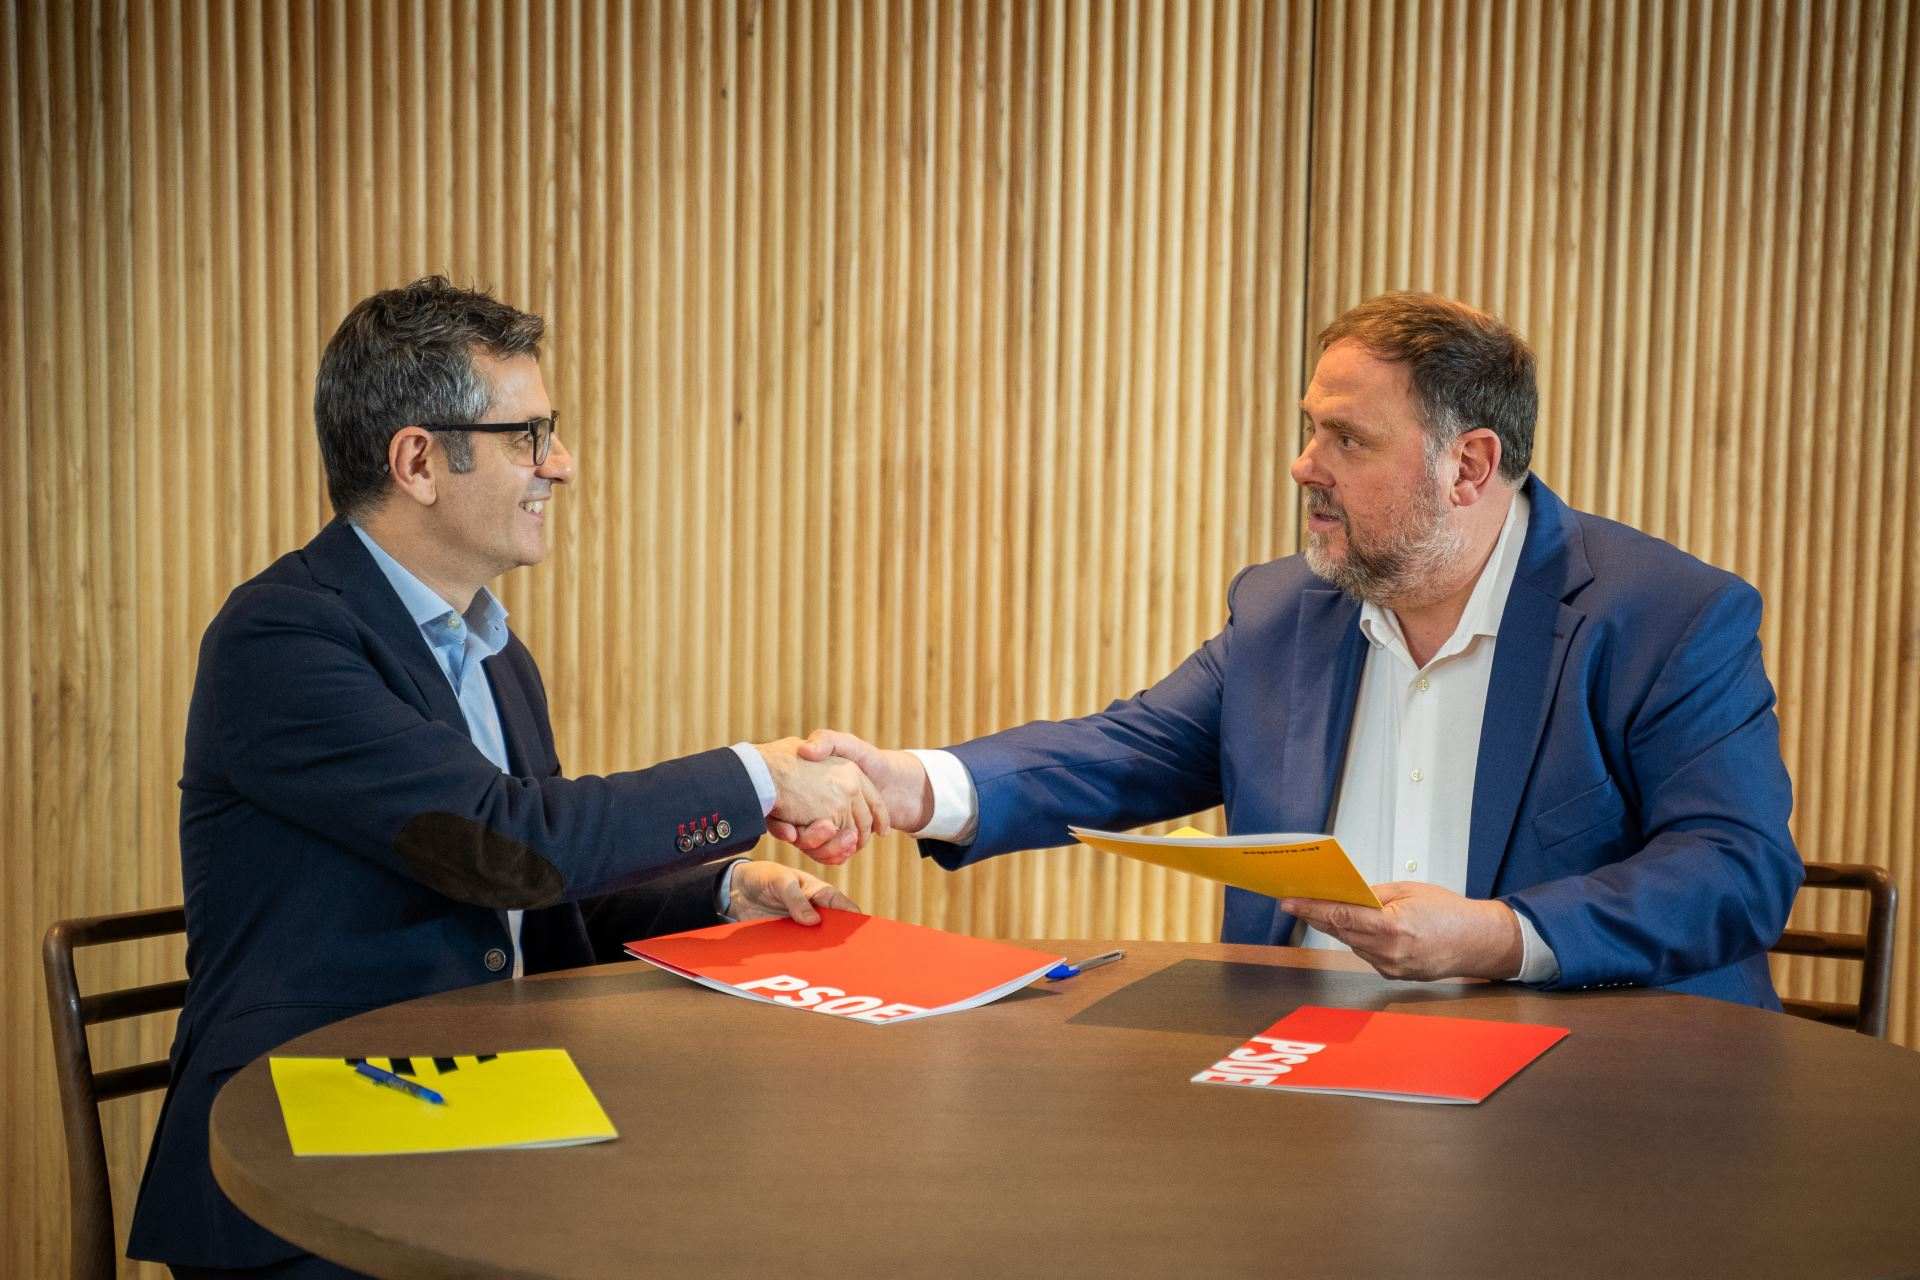 Aproves l'acord d'investidura signat entre el PSOE i ERC?